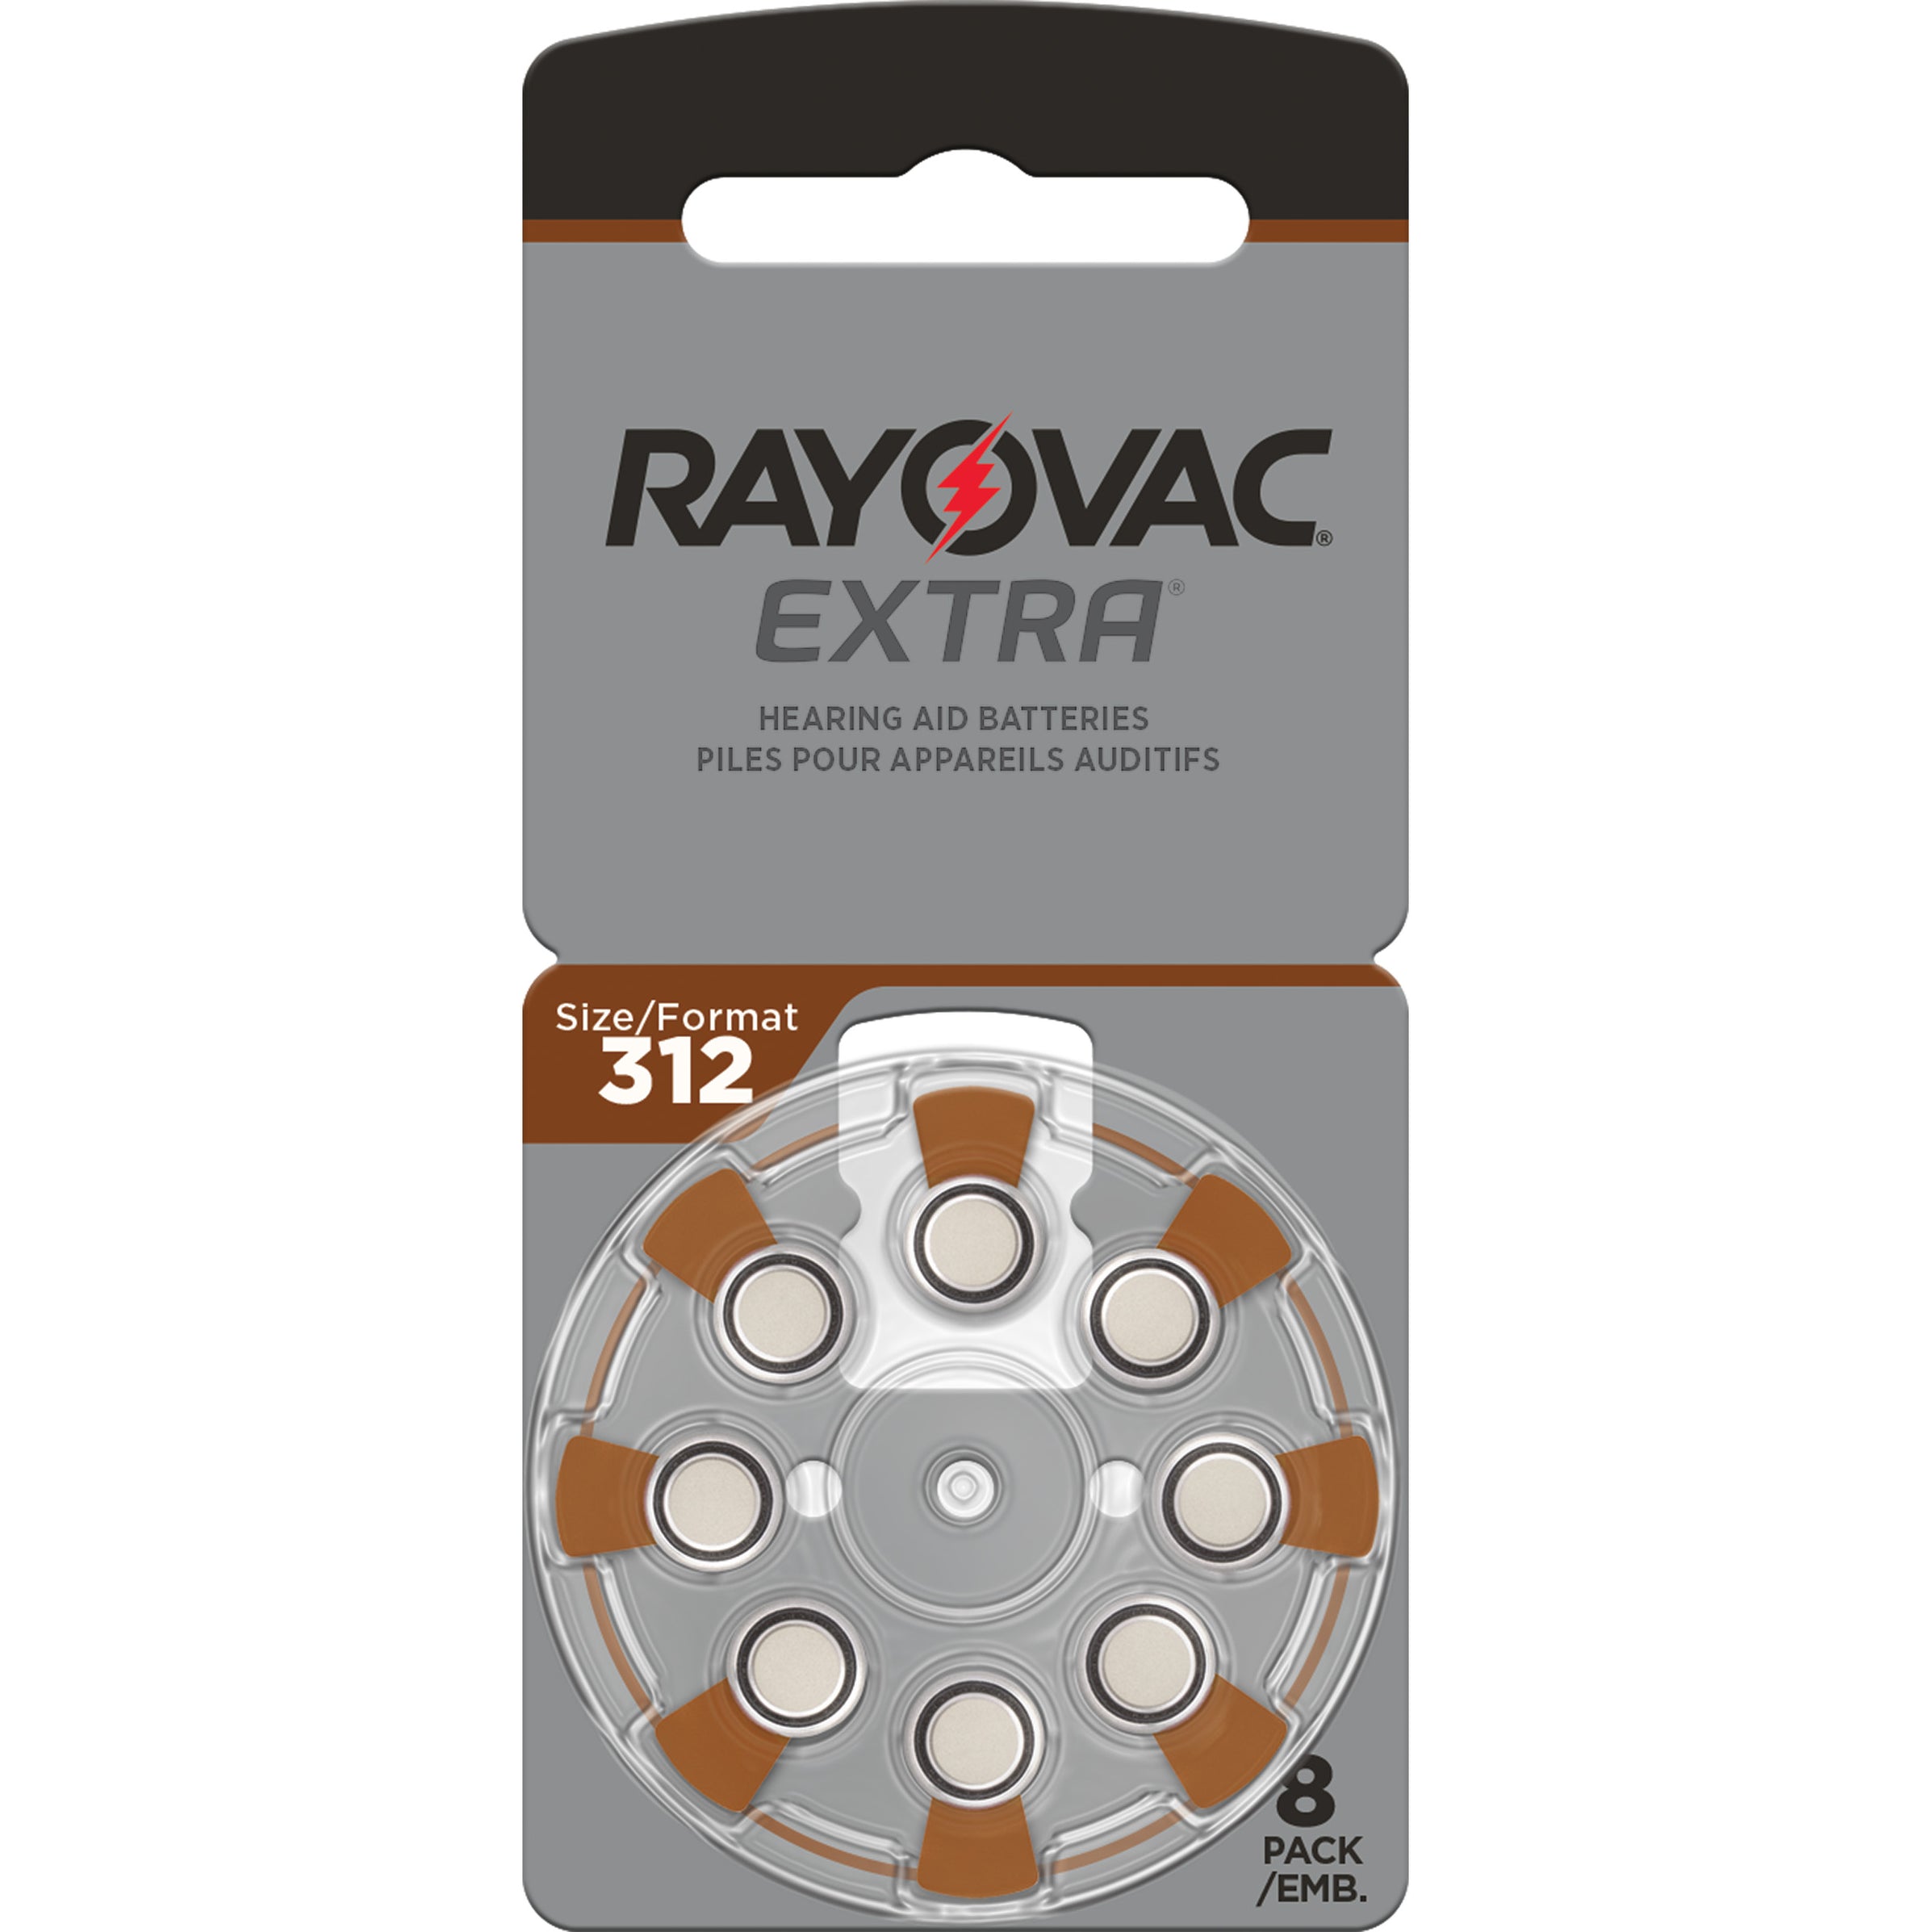 Extra hear. Rayovac 312. Za312 Rayovac Extra Black. Батарейка 312 для слуховых аппаратов. Rayovac Extra 13 для слух.аппаратов.